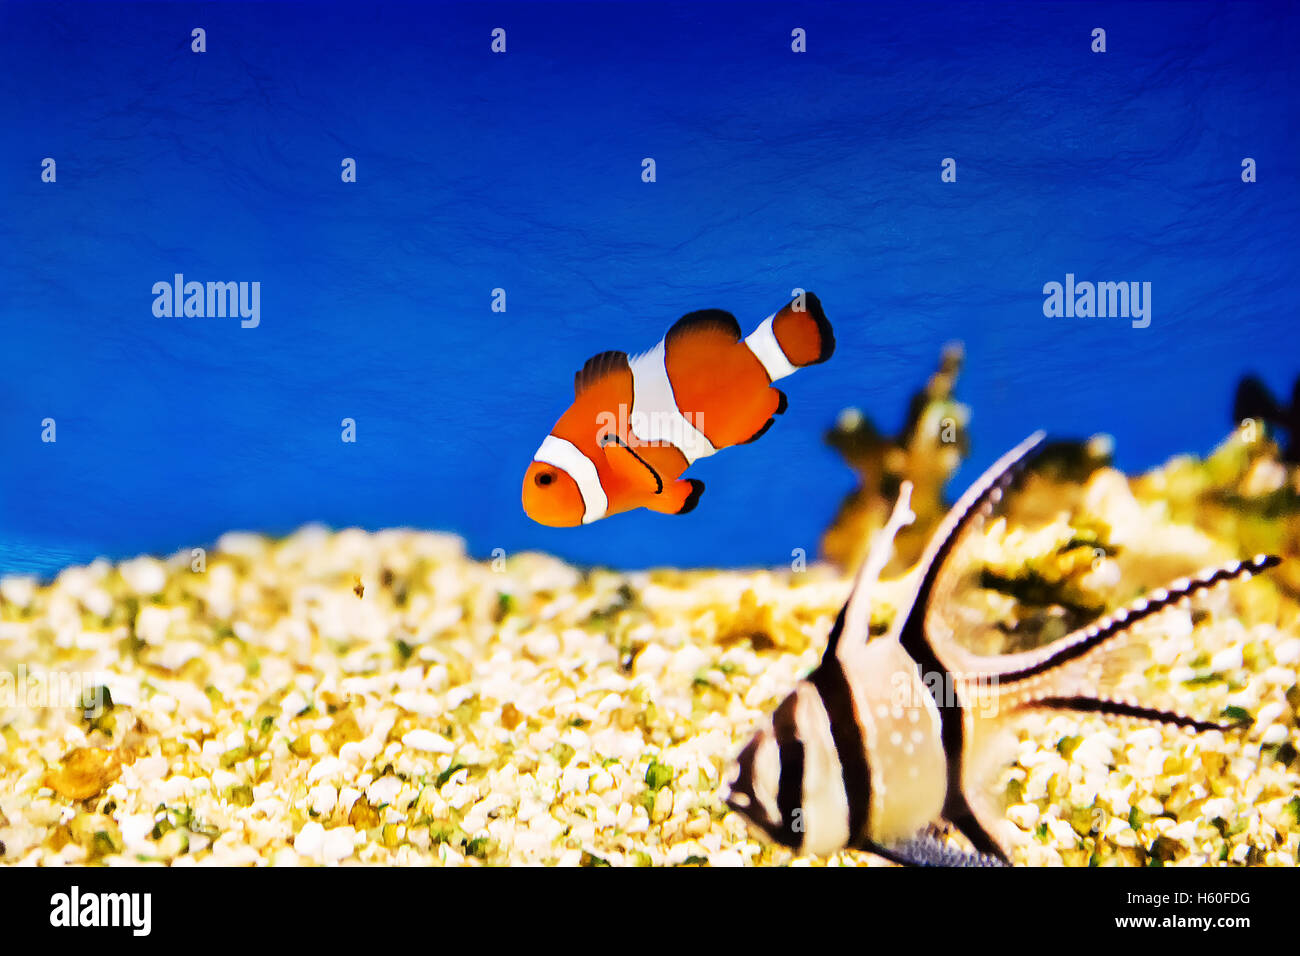 Foto di acquario pesce pagliaccio in acqua turchese Foto Stock